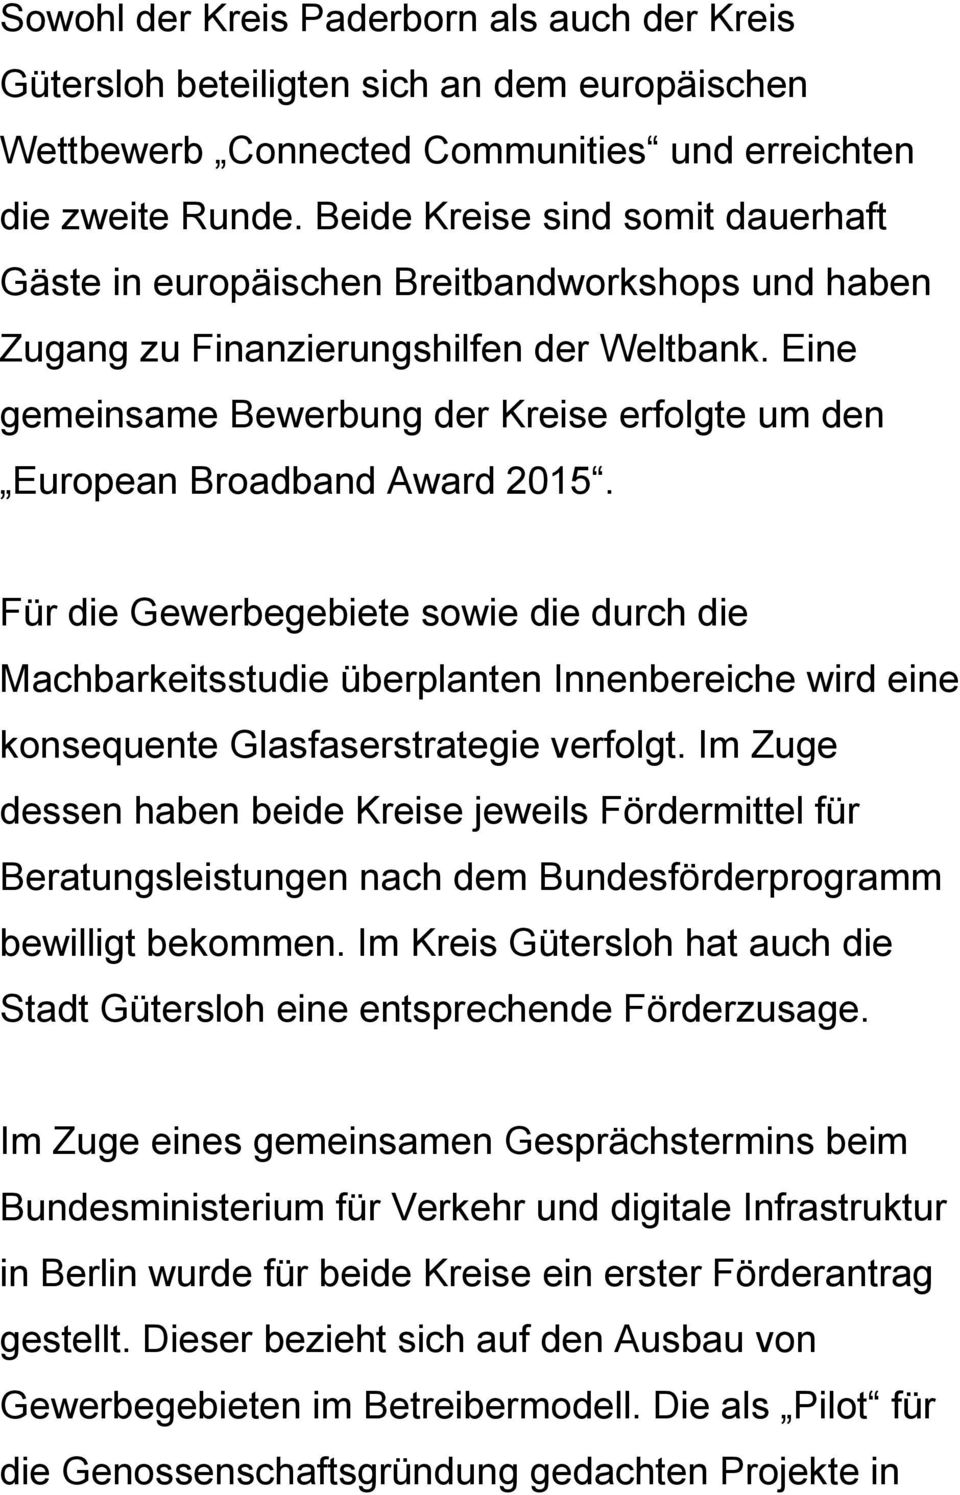 Eine gemeinsame Bewerbung der Kreise erfolgte um den European Broadband Award 2015.